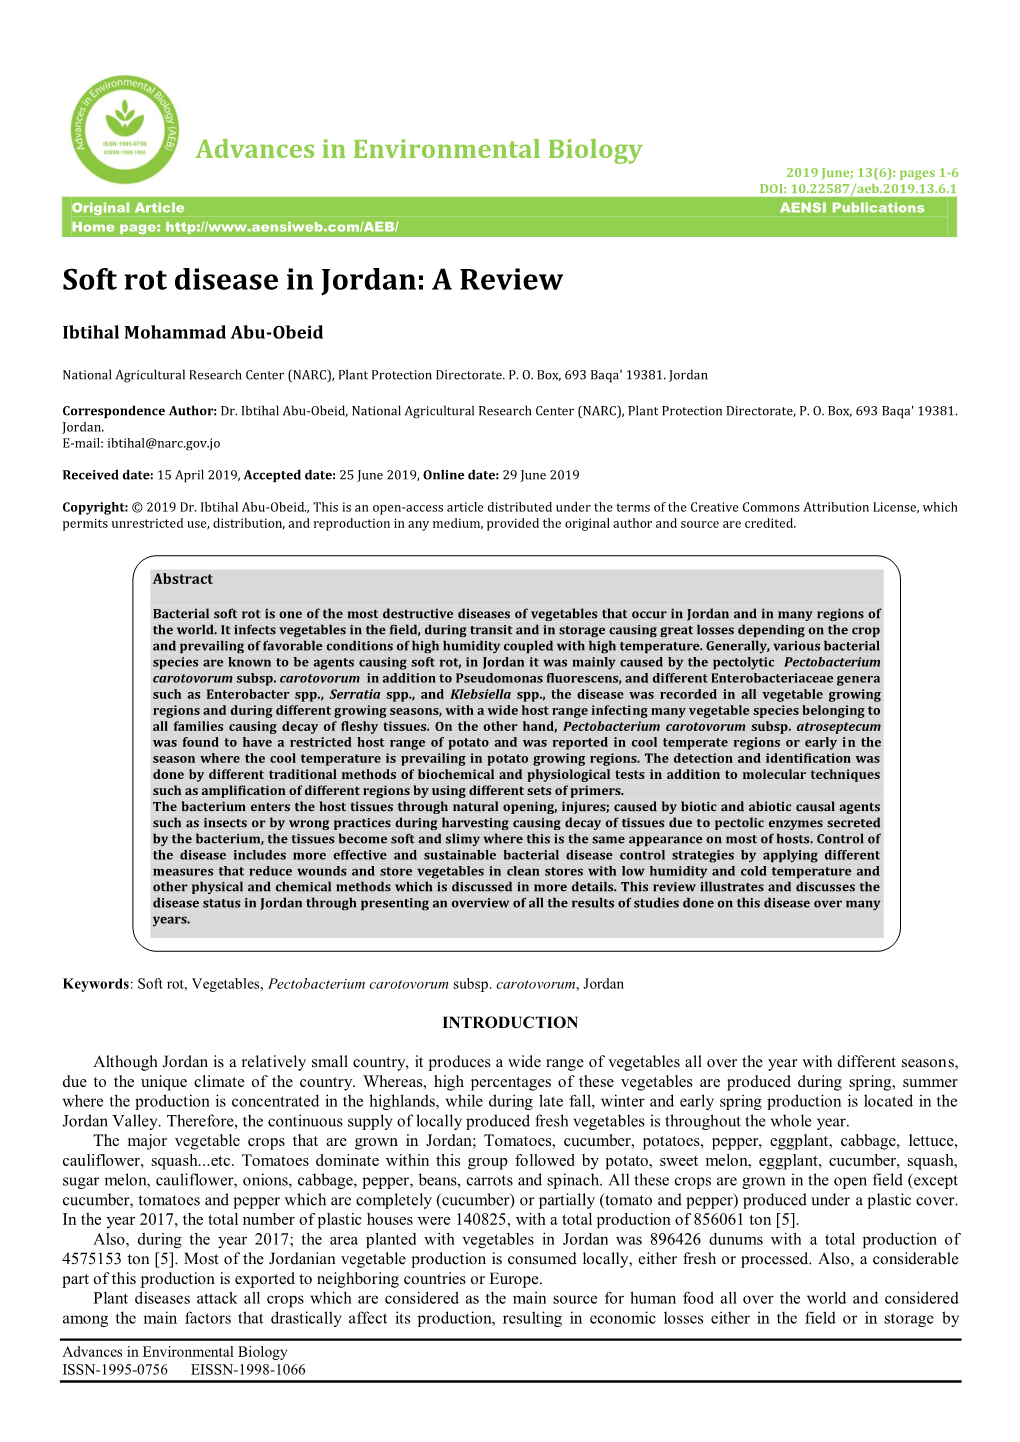 Soft Rot Disease in Jordan: a Review